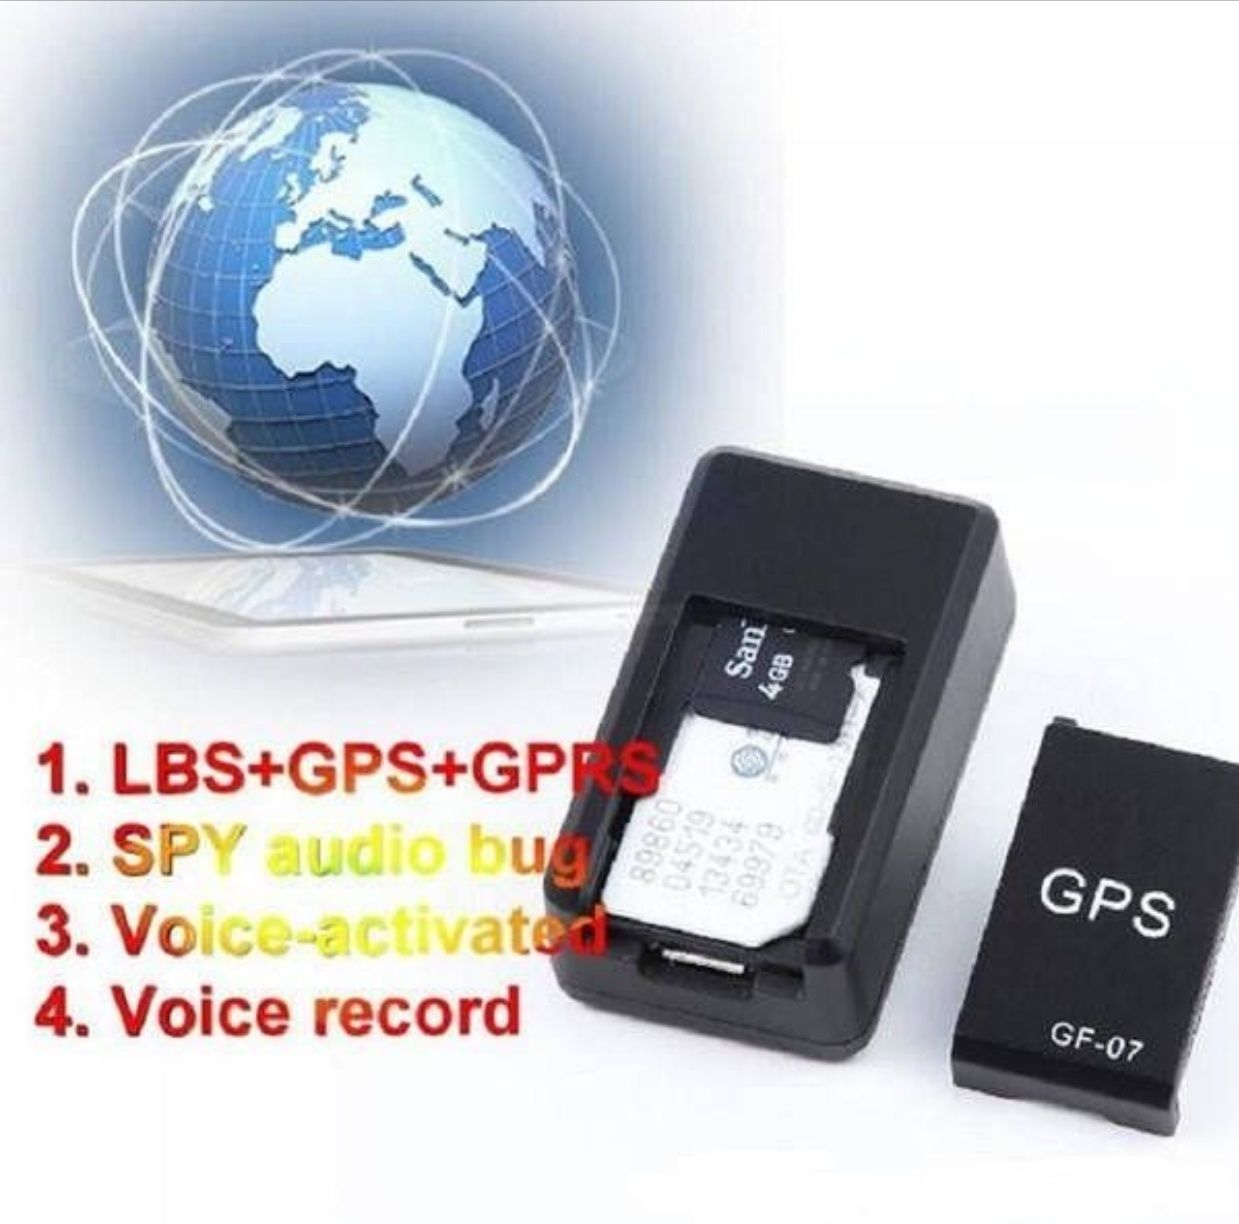 Мини GPS трекер GF-07 с микрофоном